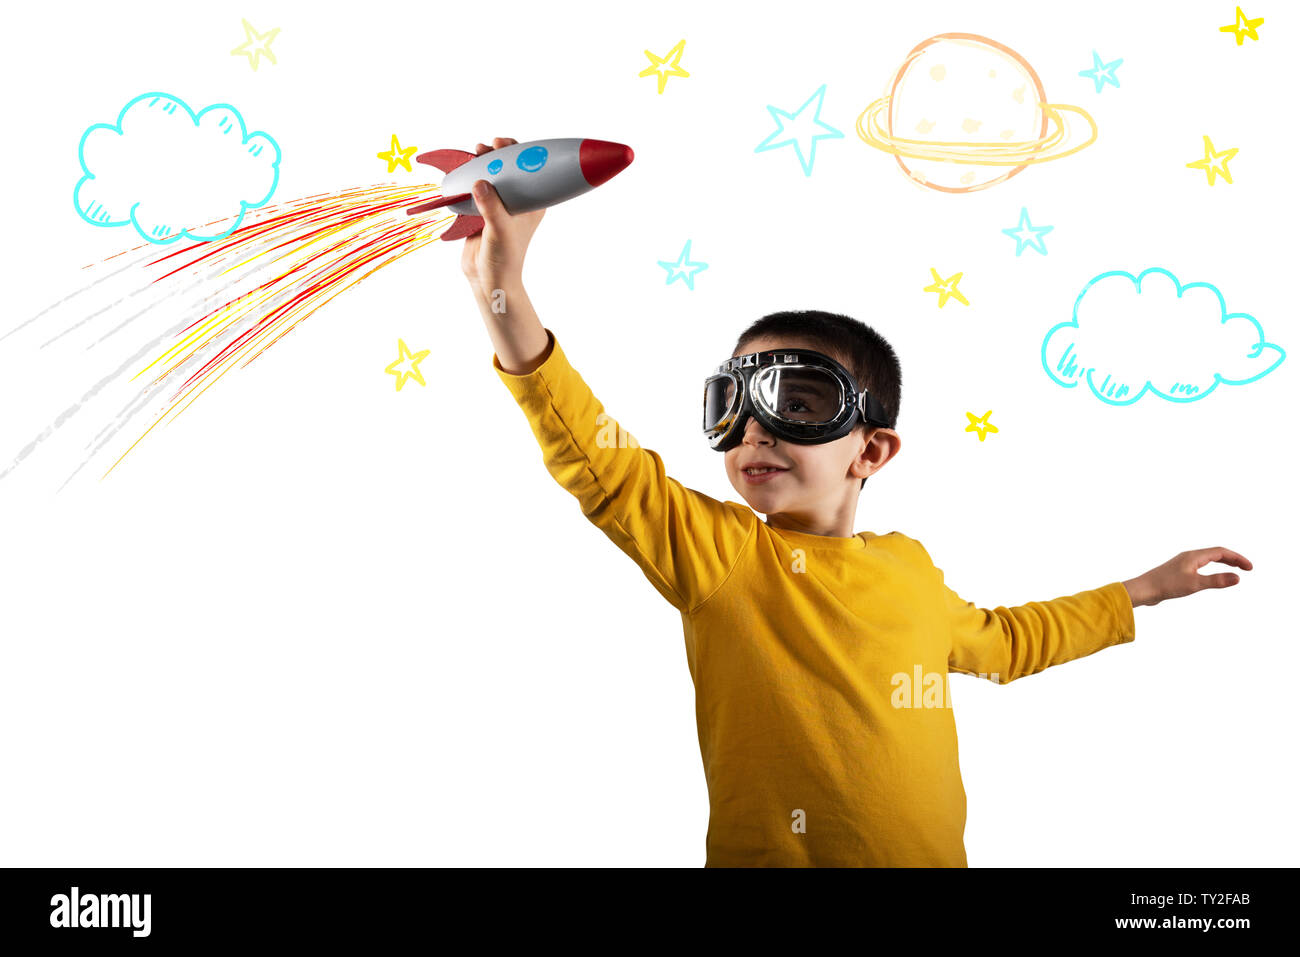 Enfant joue avec une fusée. Concept d'imagination. Isolé sur fond blanc Banque D'Images